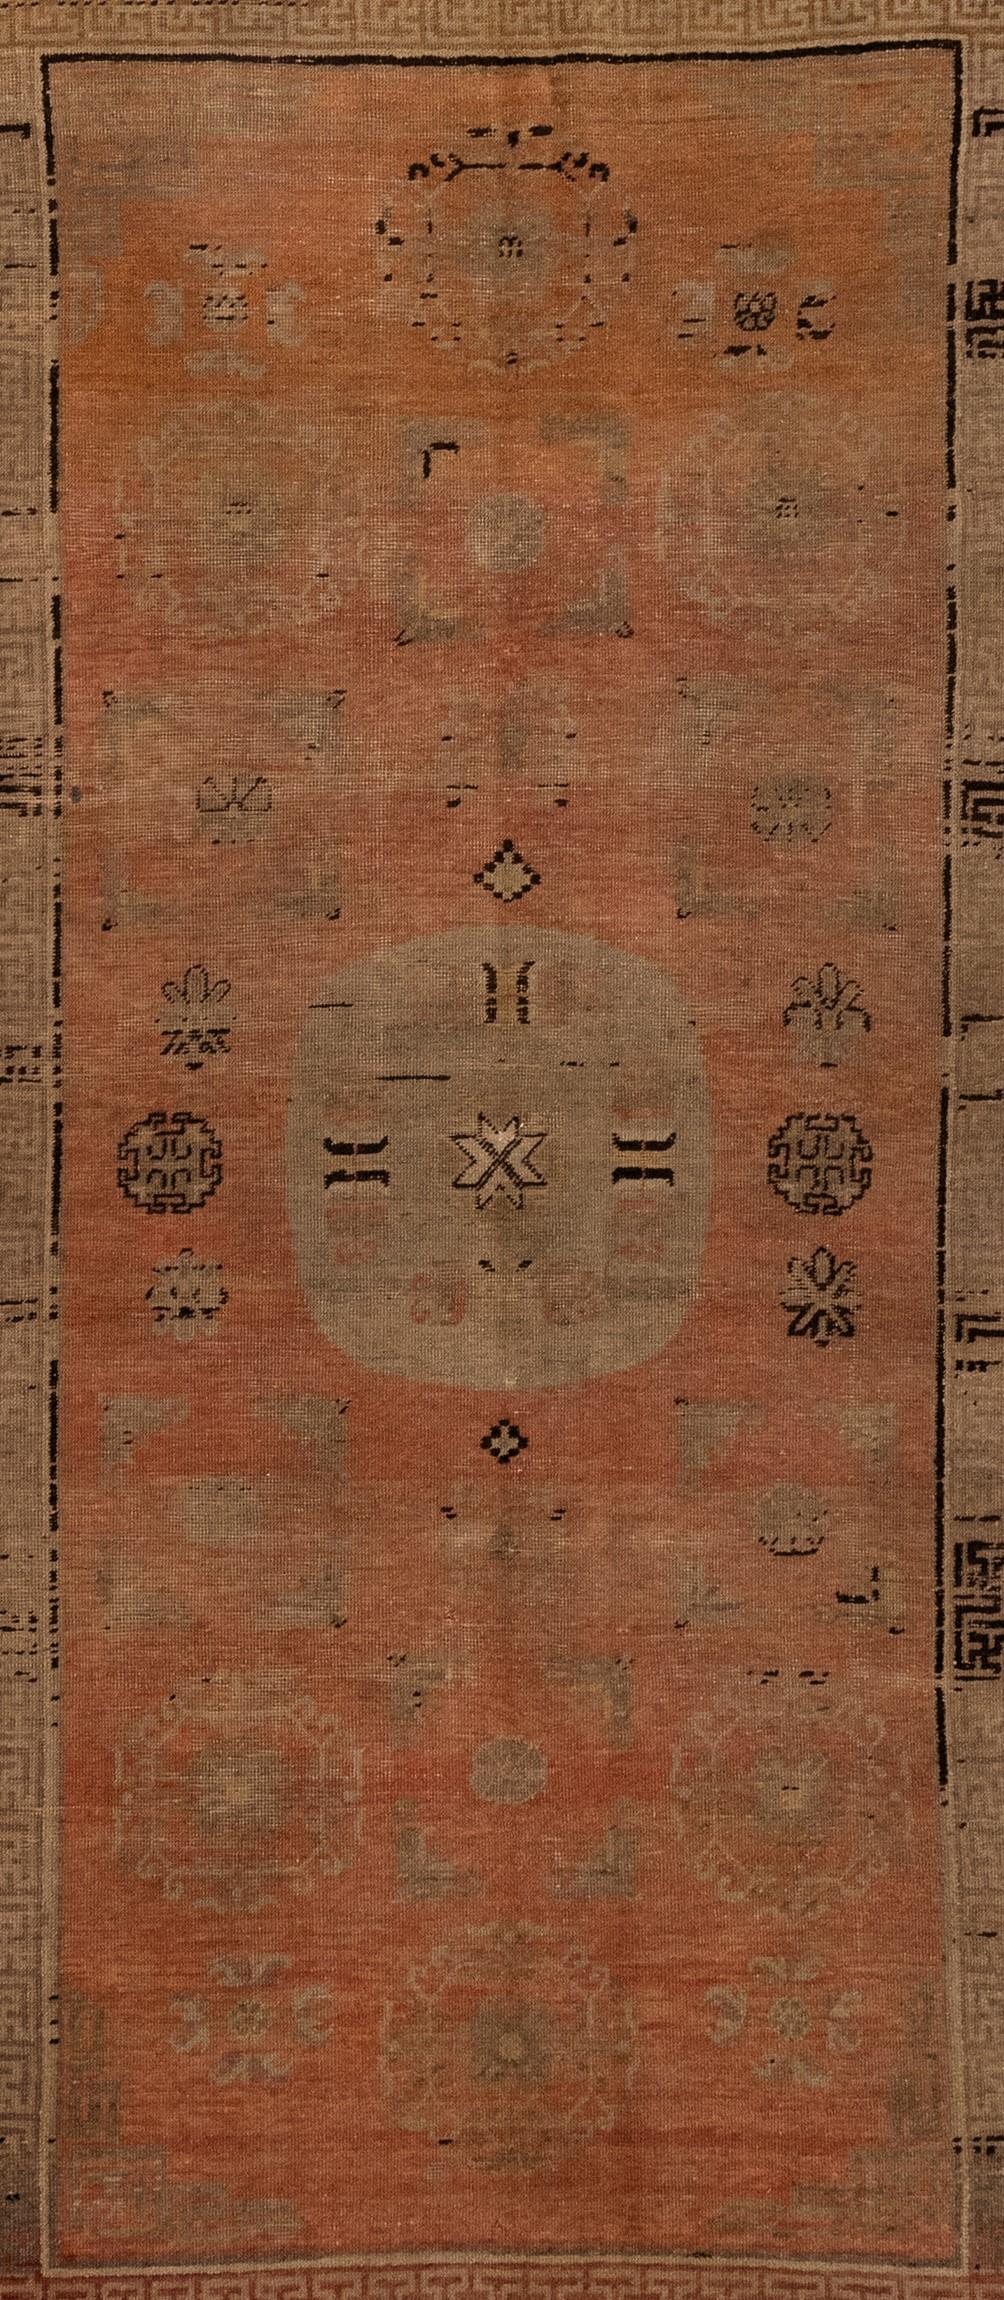 Dieser antike Khotan-Teppich aus Ostturkestan ist wirklich atemberaubend. Es ist klar, dass um 1900 viel Sorgfalt und Aufmerksamkeit in seine Herstellung geflossen ist, und das runde Medaillon ist das eigentliche Highlight. Ich finde es toll, dass